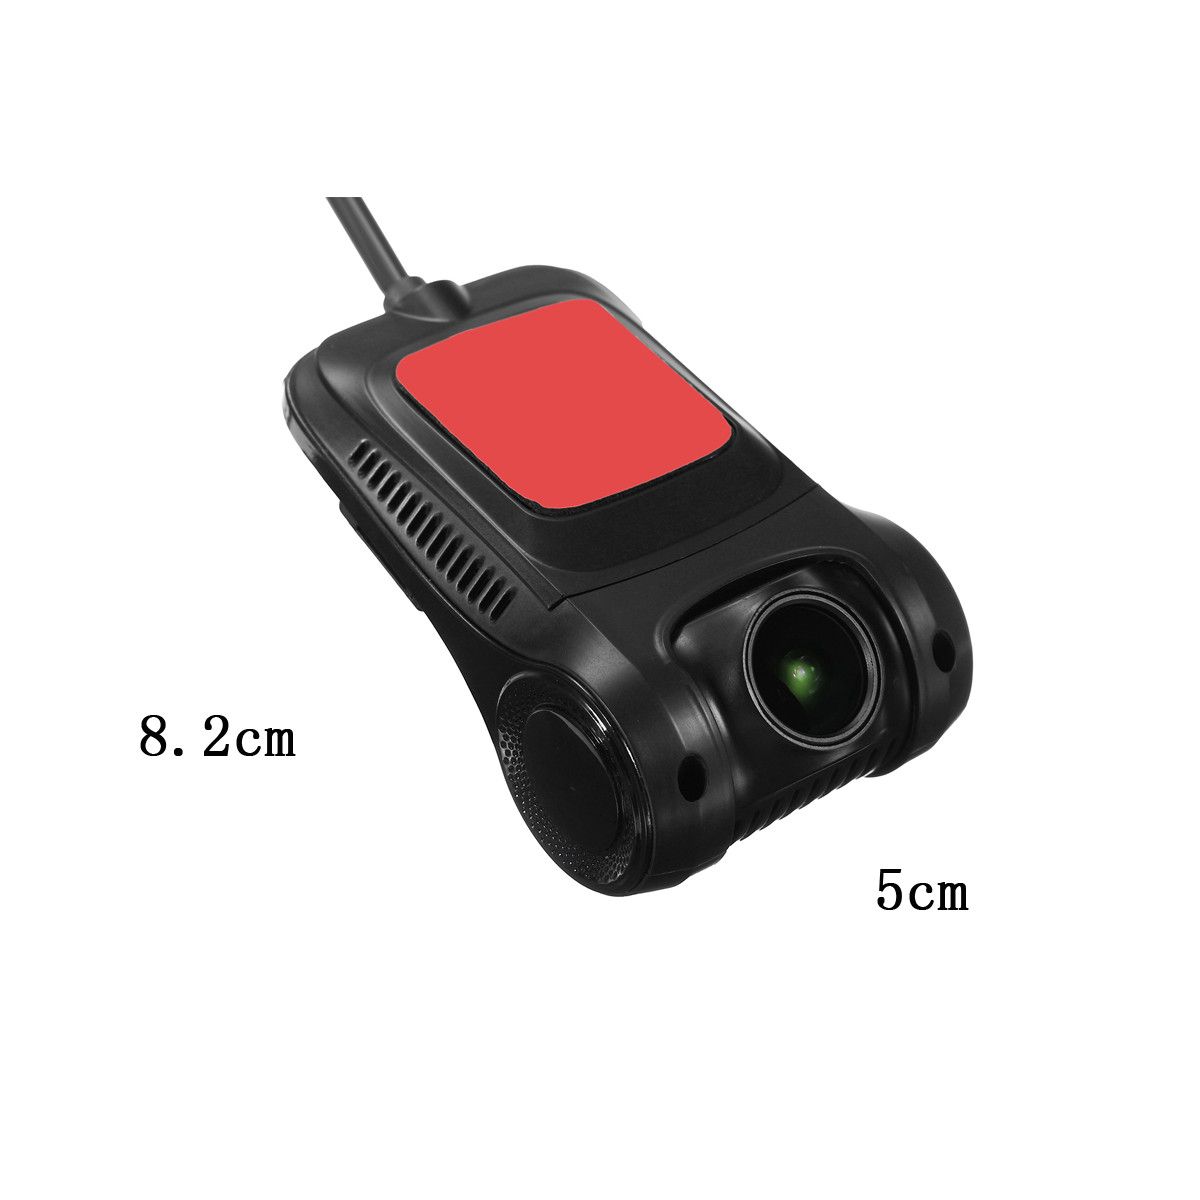 RS301-Video-Recorder-1080P-Car-DVR-Hidden-Camera-Hotspot-G-Sensor-Night-Vision-1197068